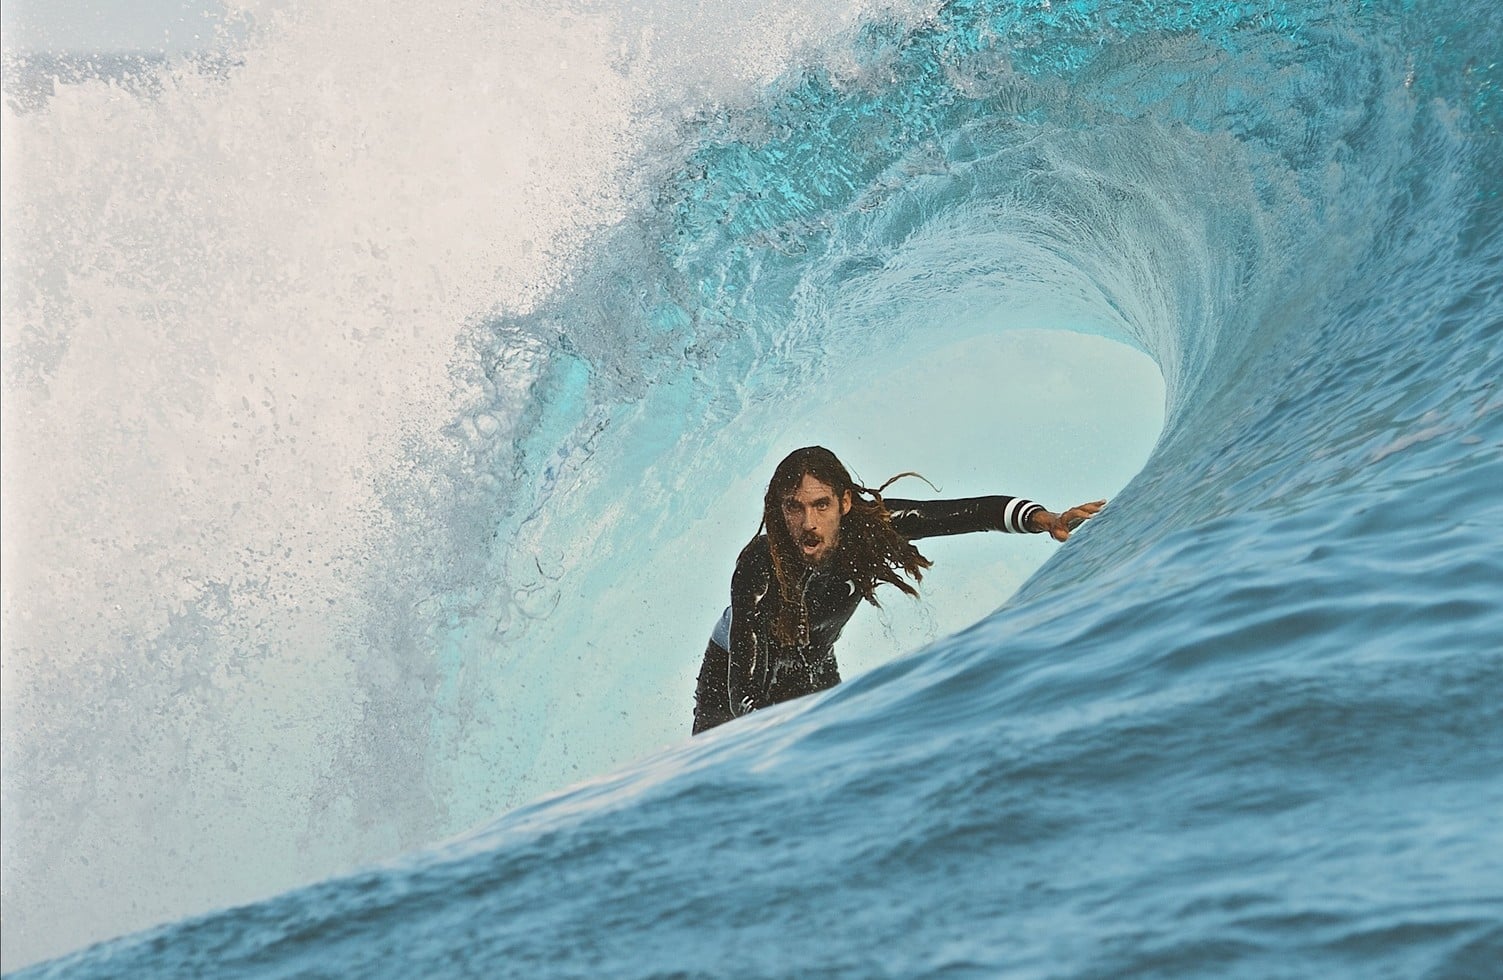 Camila Neves: How I Became a Professional Surf Photographer